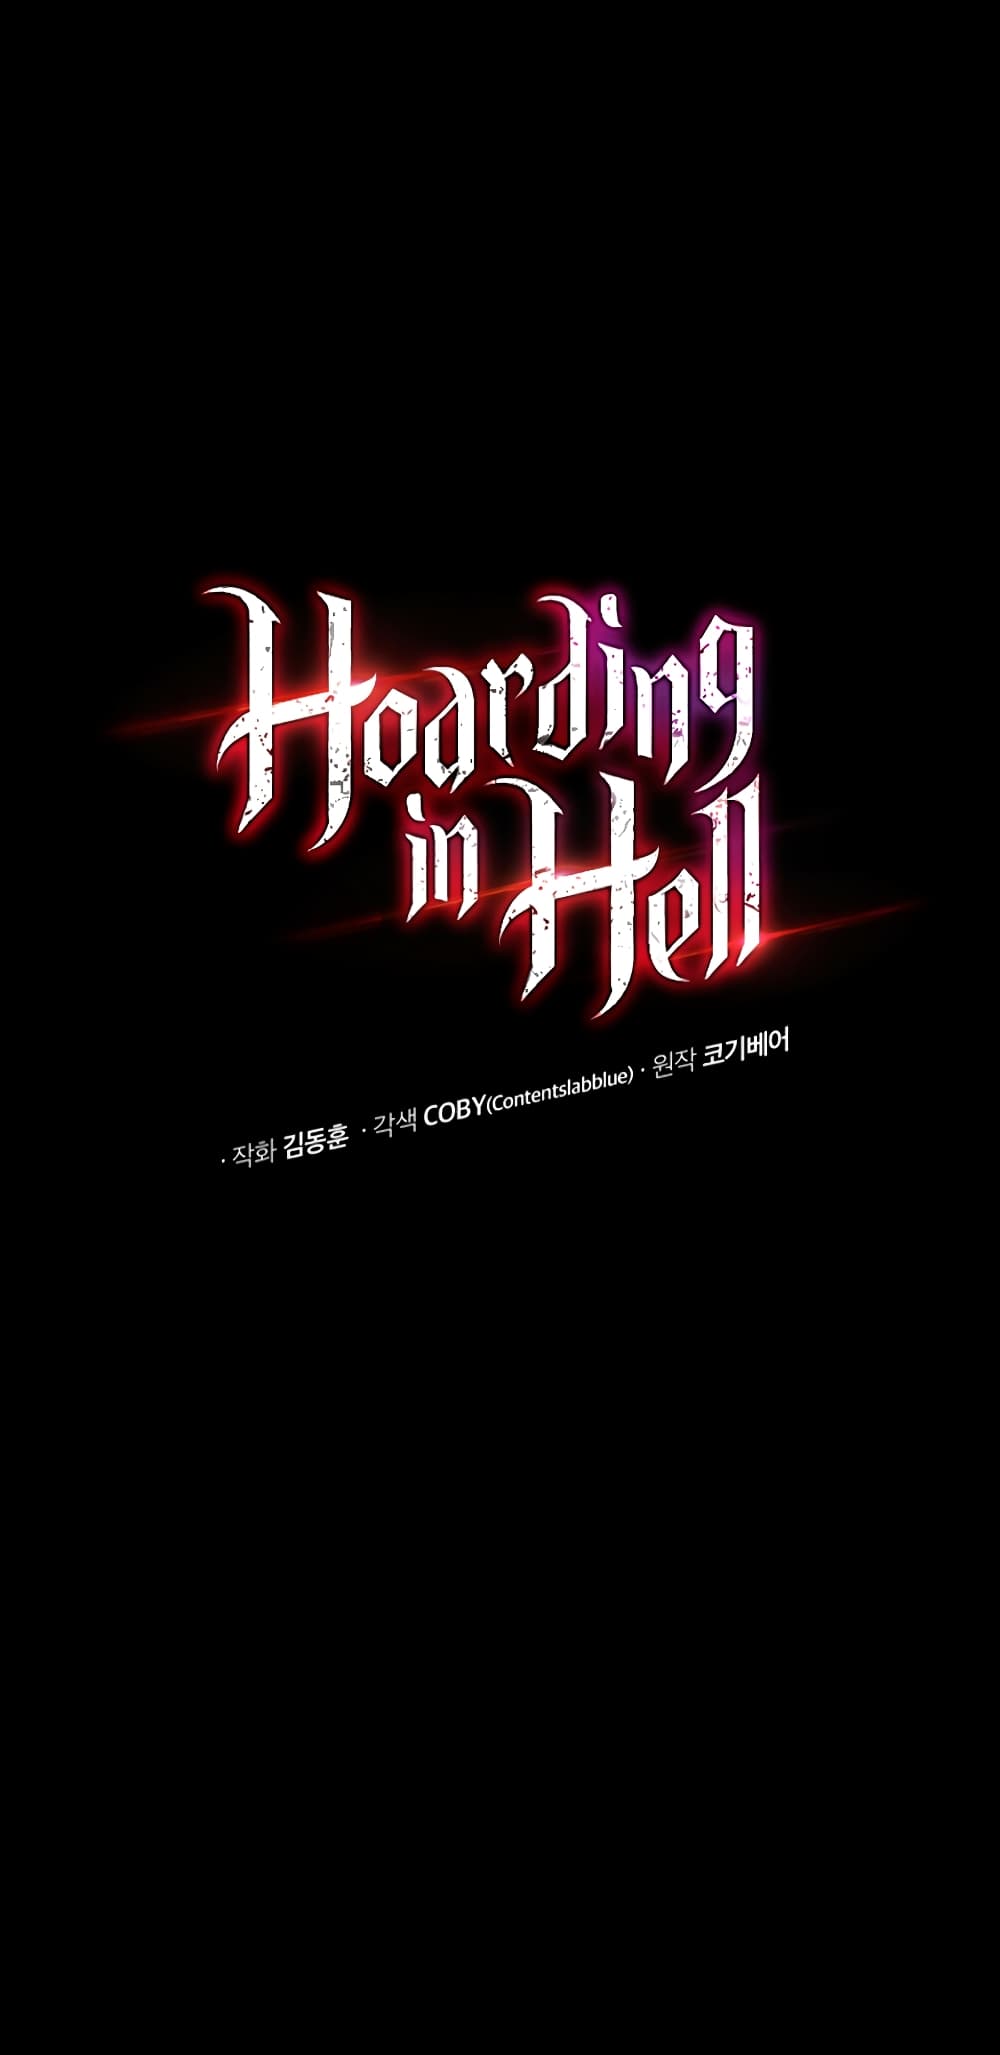 Hoarding in Hell 21 06